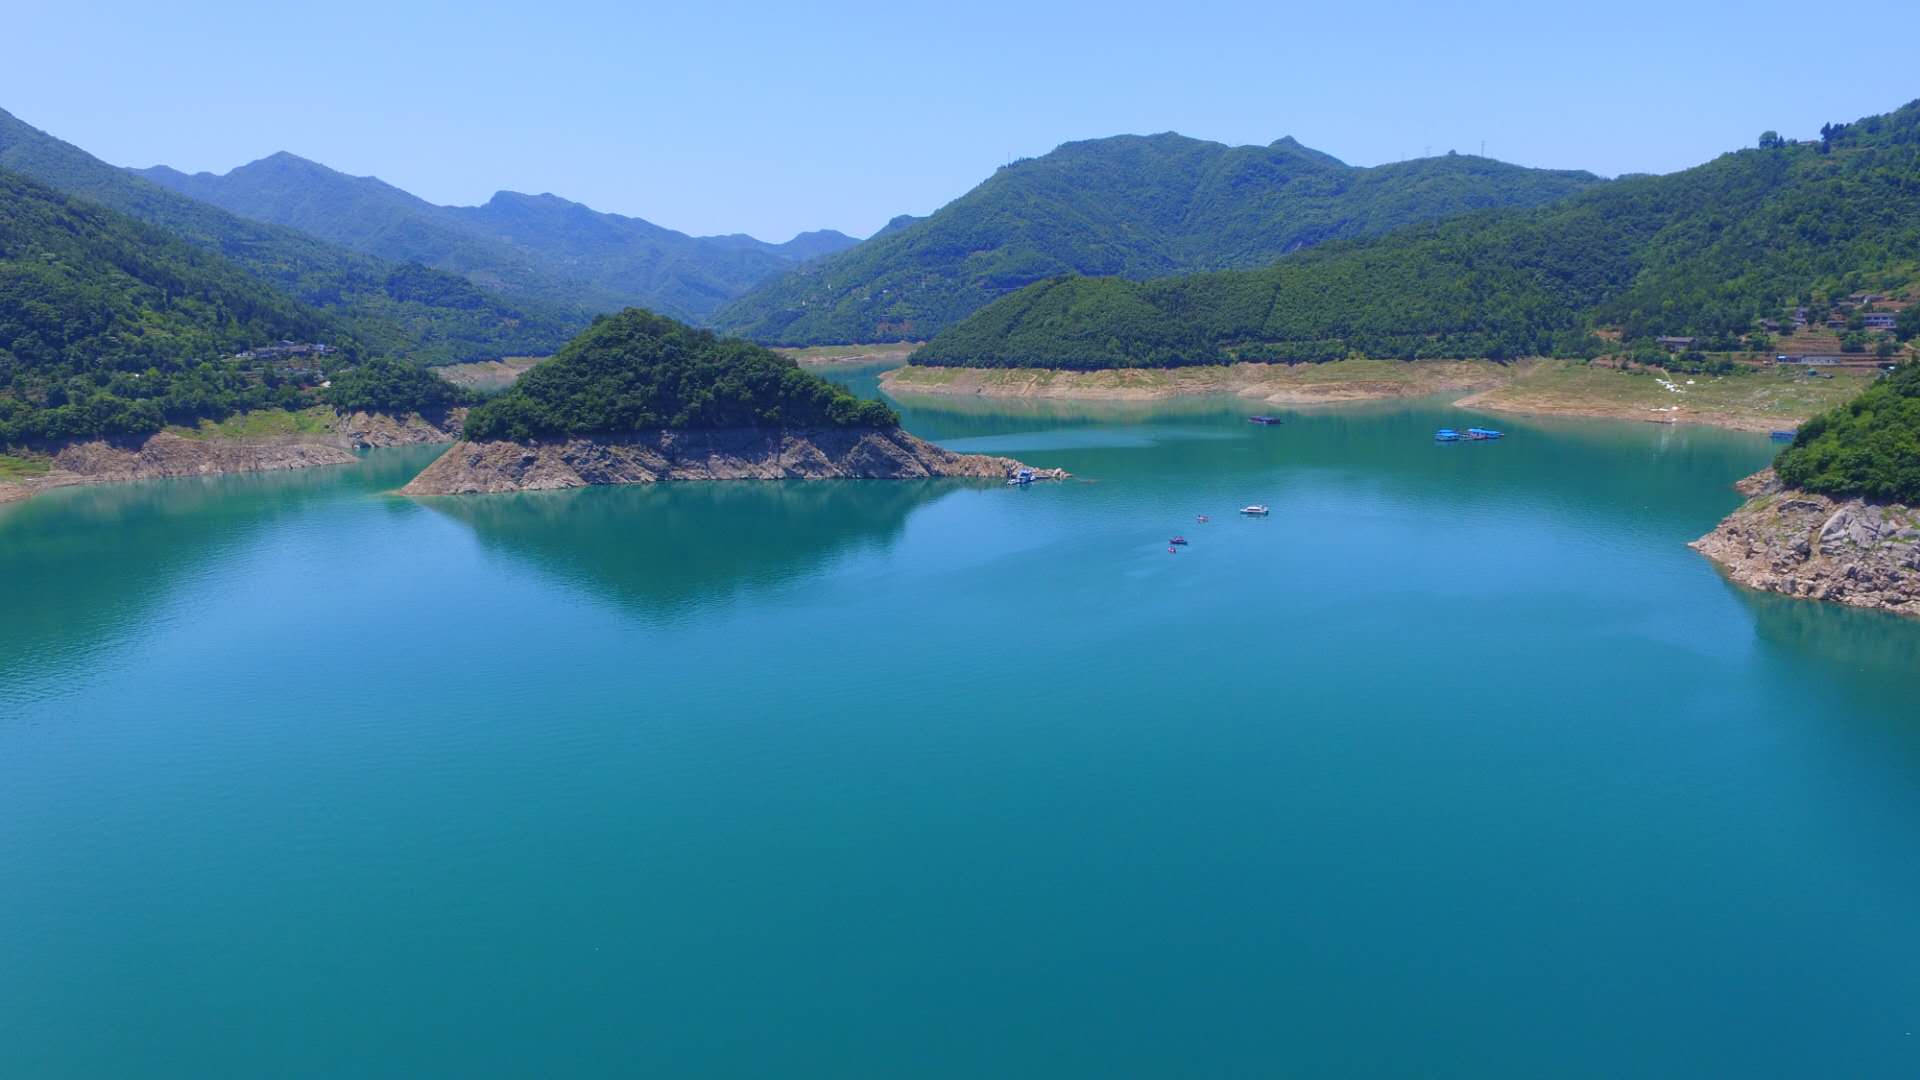 郑州白龙湖图片